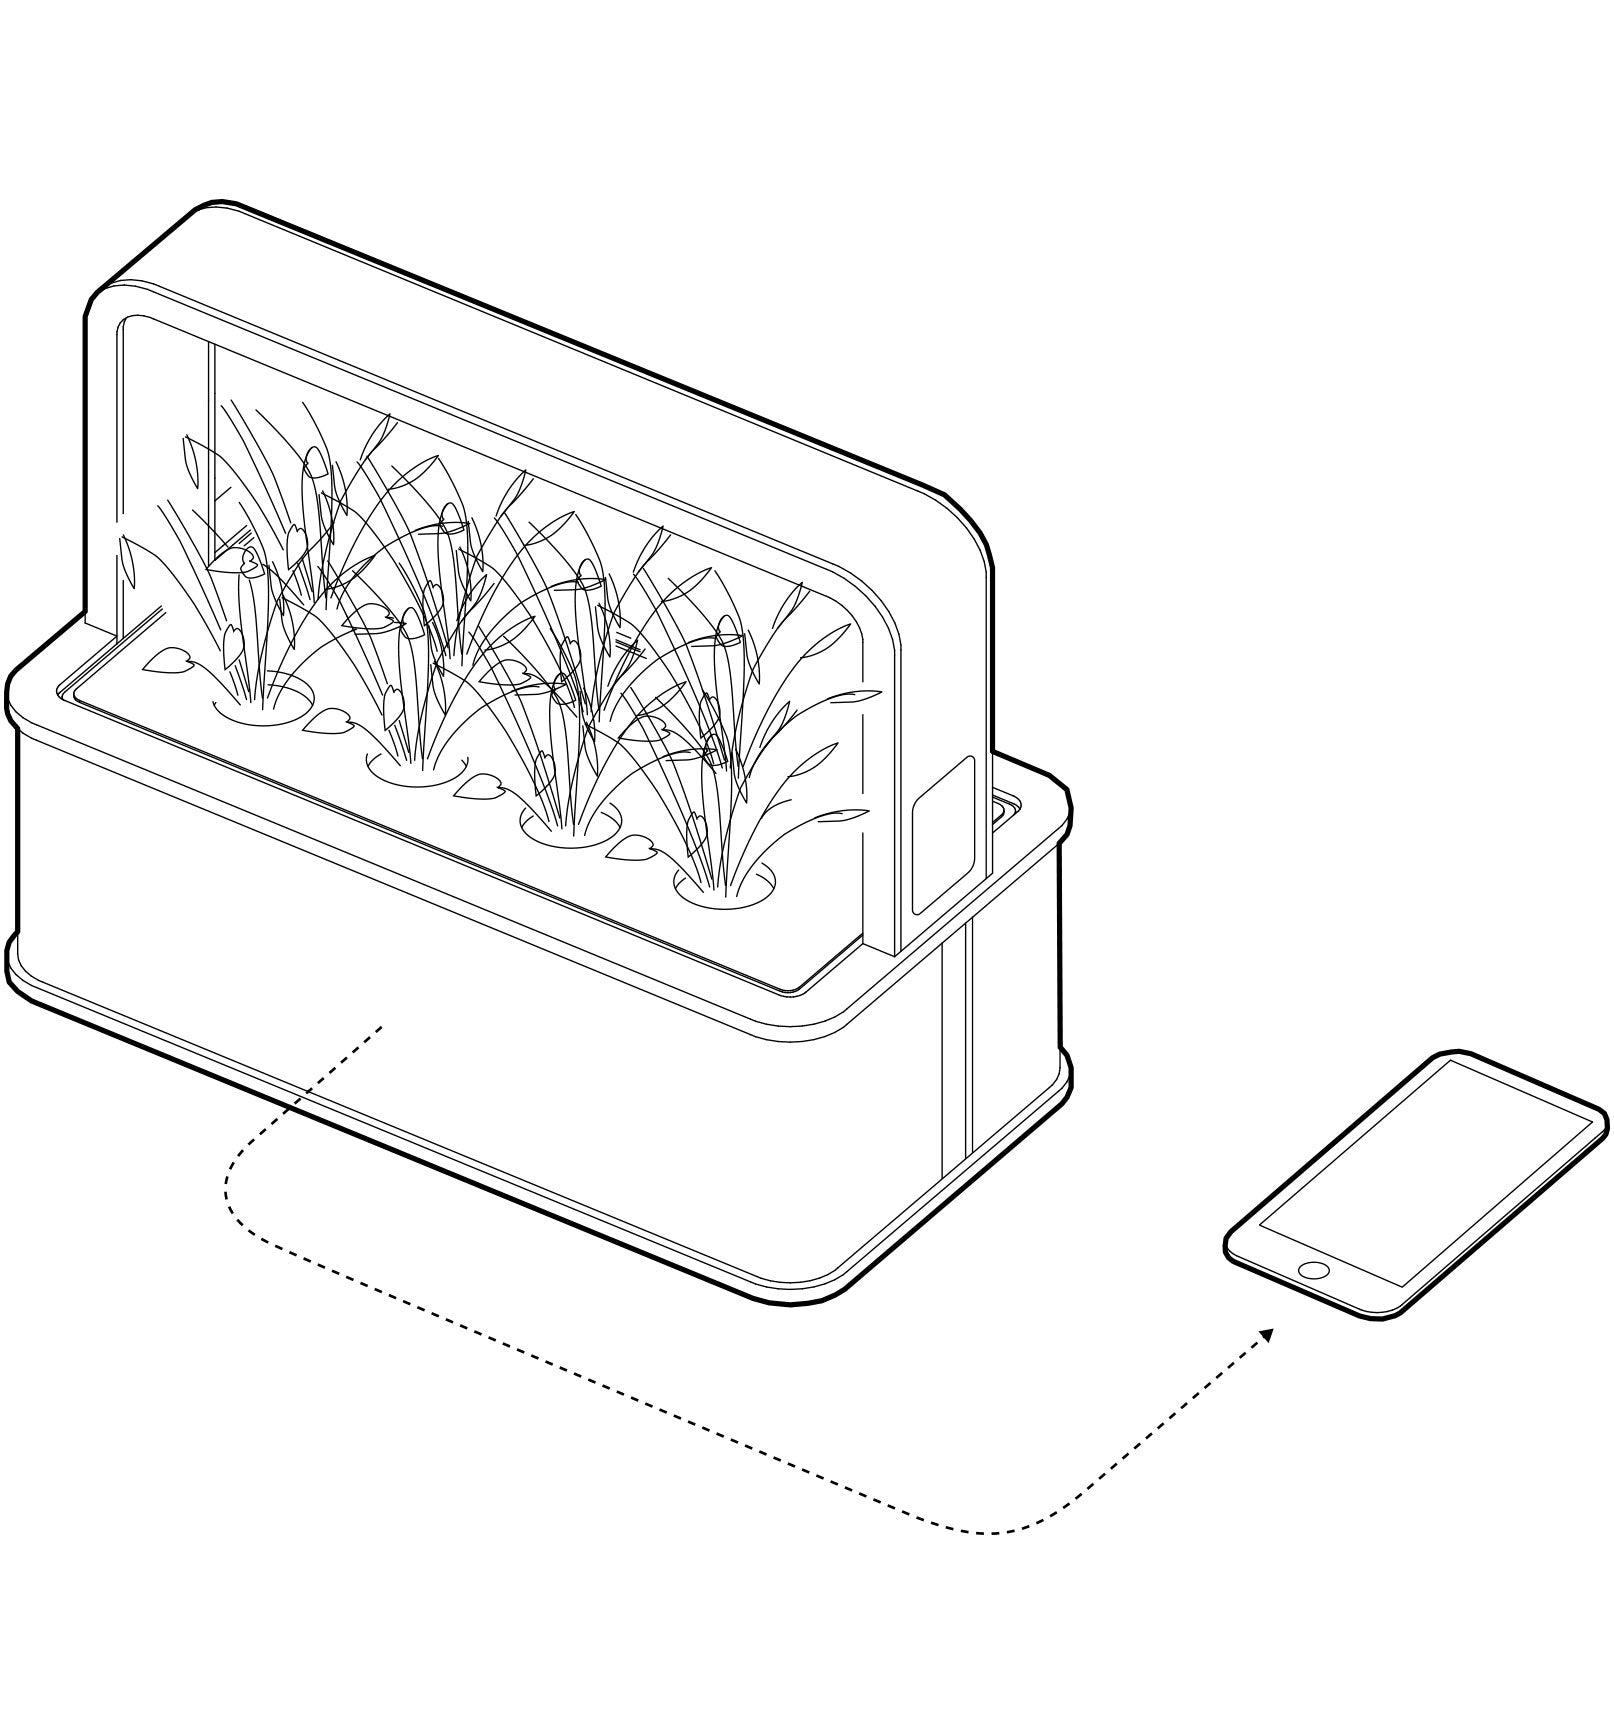 Smart Garden 9 technical drawing